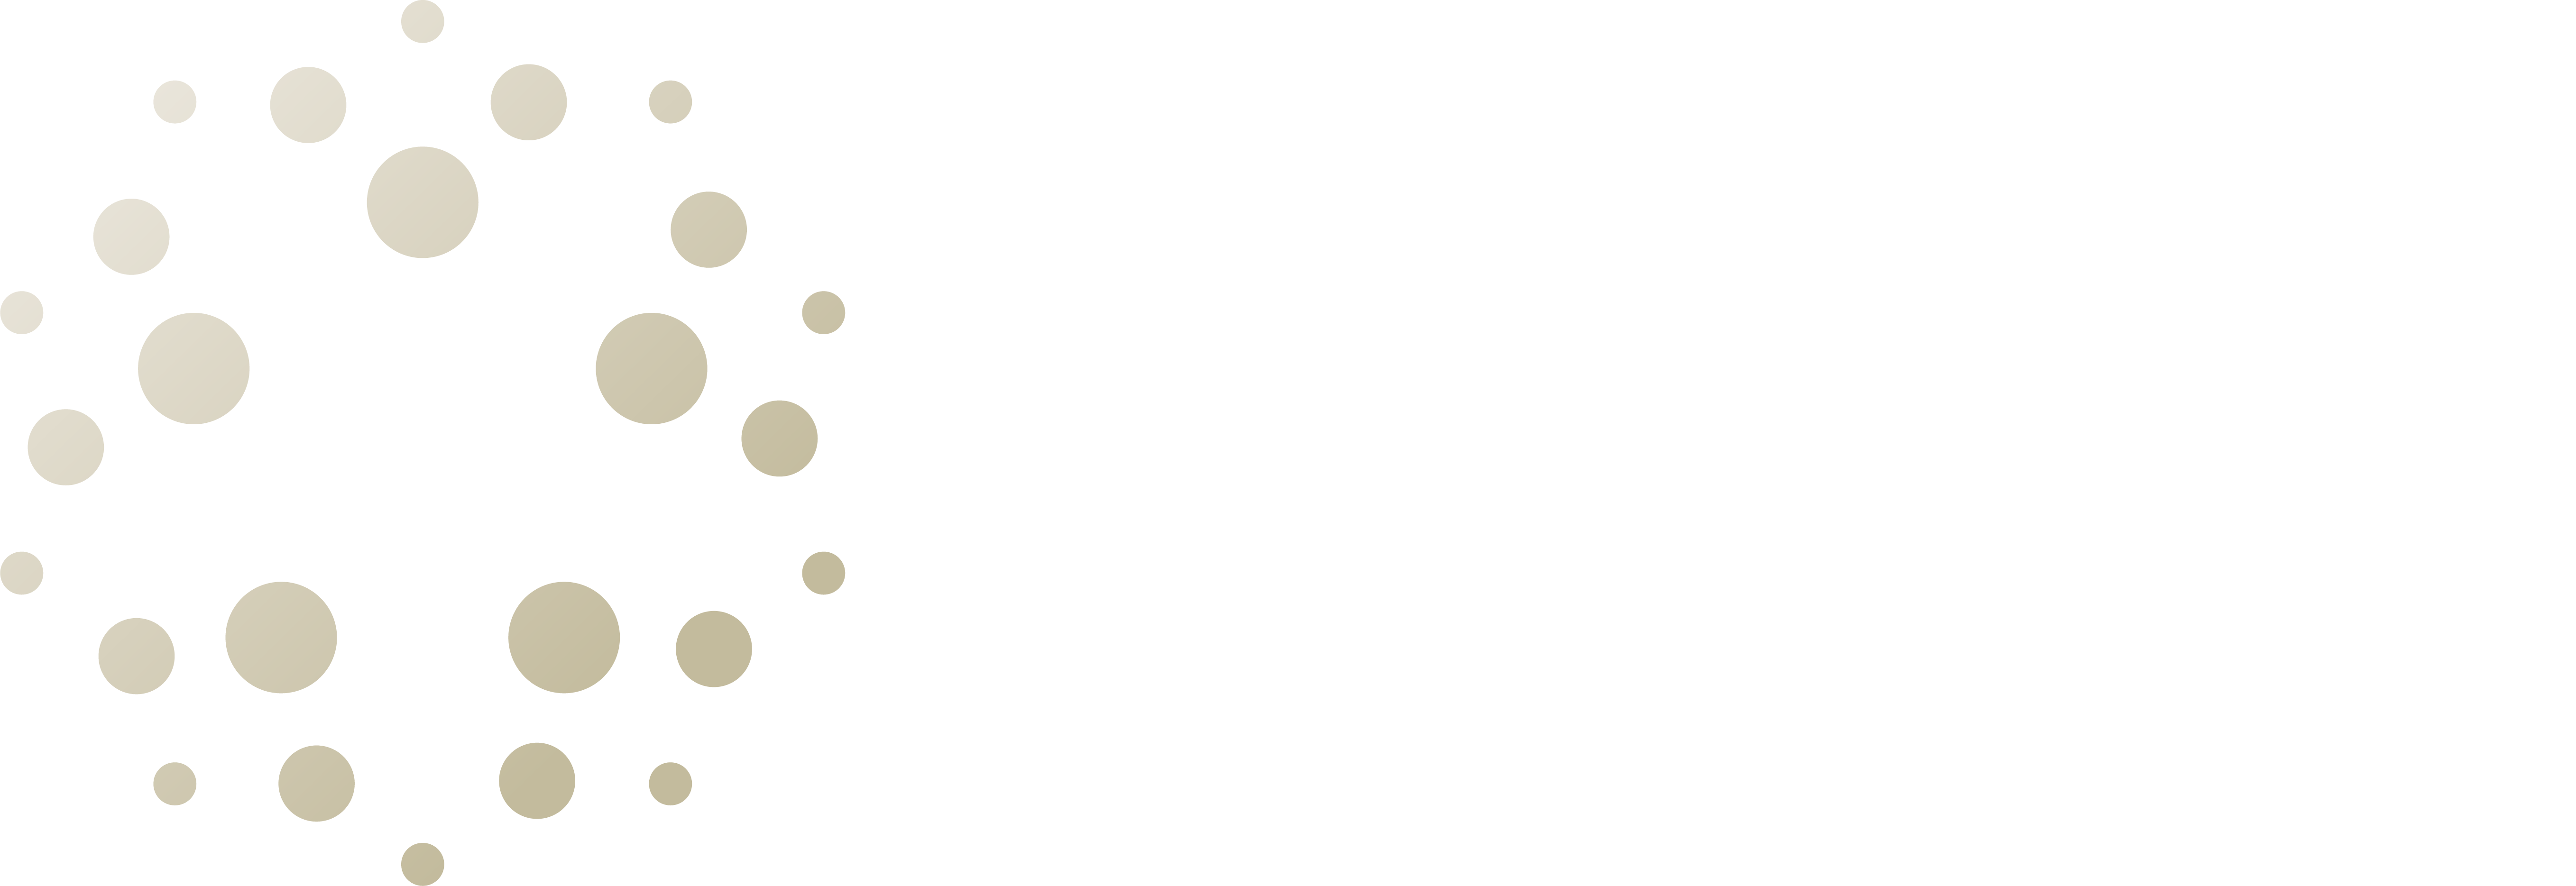 Renova Aesthetic Institute